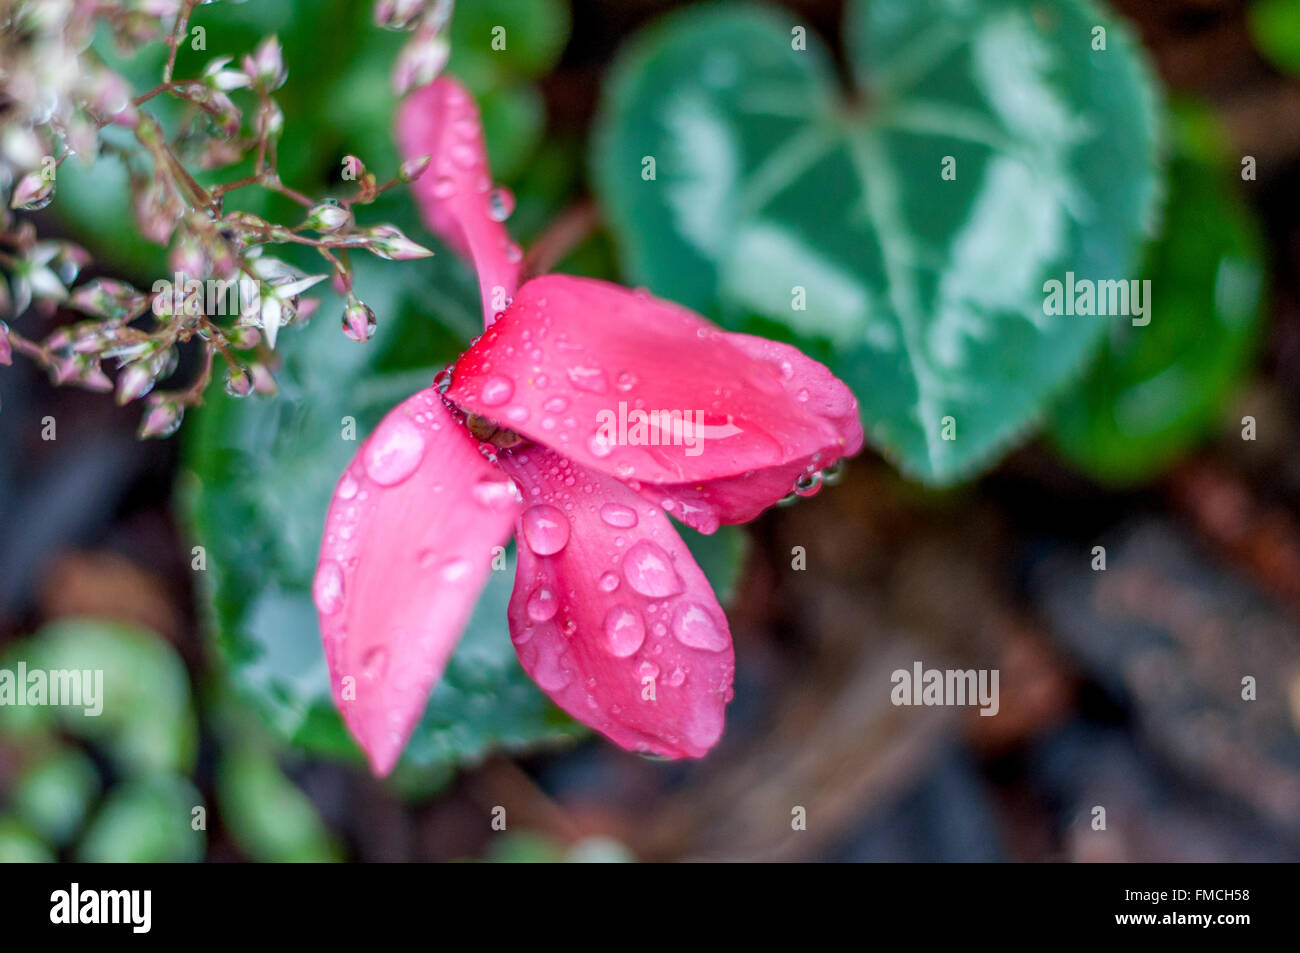 In der Nähe von Rosa Alpenveilchen blühen, Regen fällt auf Blütenblättern w/herzförmigen Blätter von oben im Blumengarten gesehen in Regen, Makro botanischen abstrakt. Stockfoto